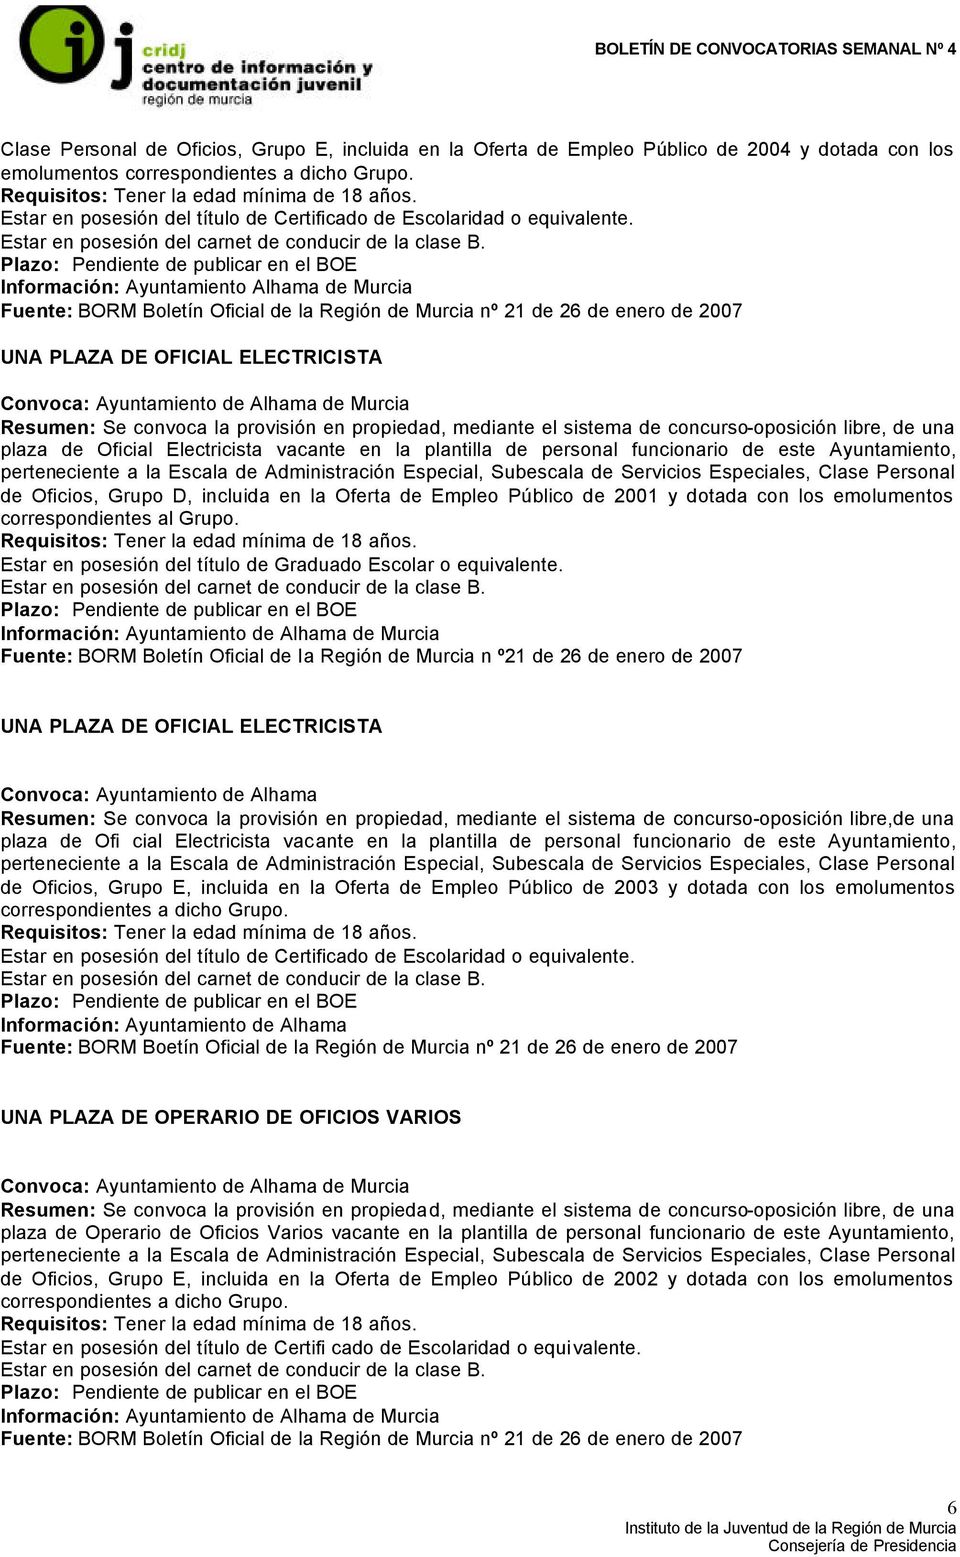 Información: Ayuntamiento Alhama de Murcia Fuente: BORM Boletín Oficial de la Región de Murcia nº 21 de 26 de enero de 2007 UNA PLAZA DE OFICIAL ELECTRICISTA Convoca: Ayuntamiento de Alhama de Murcia